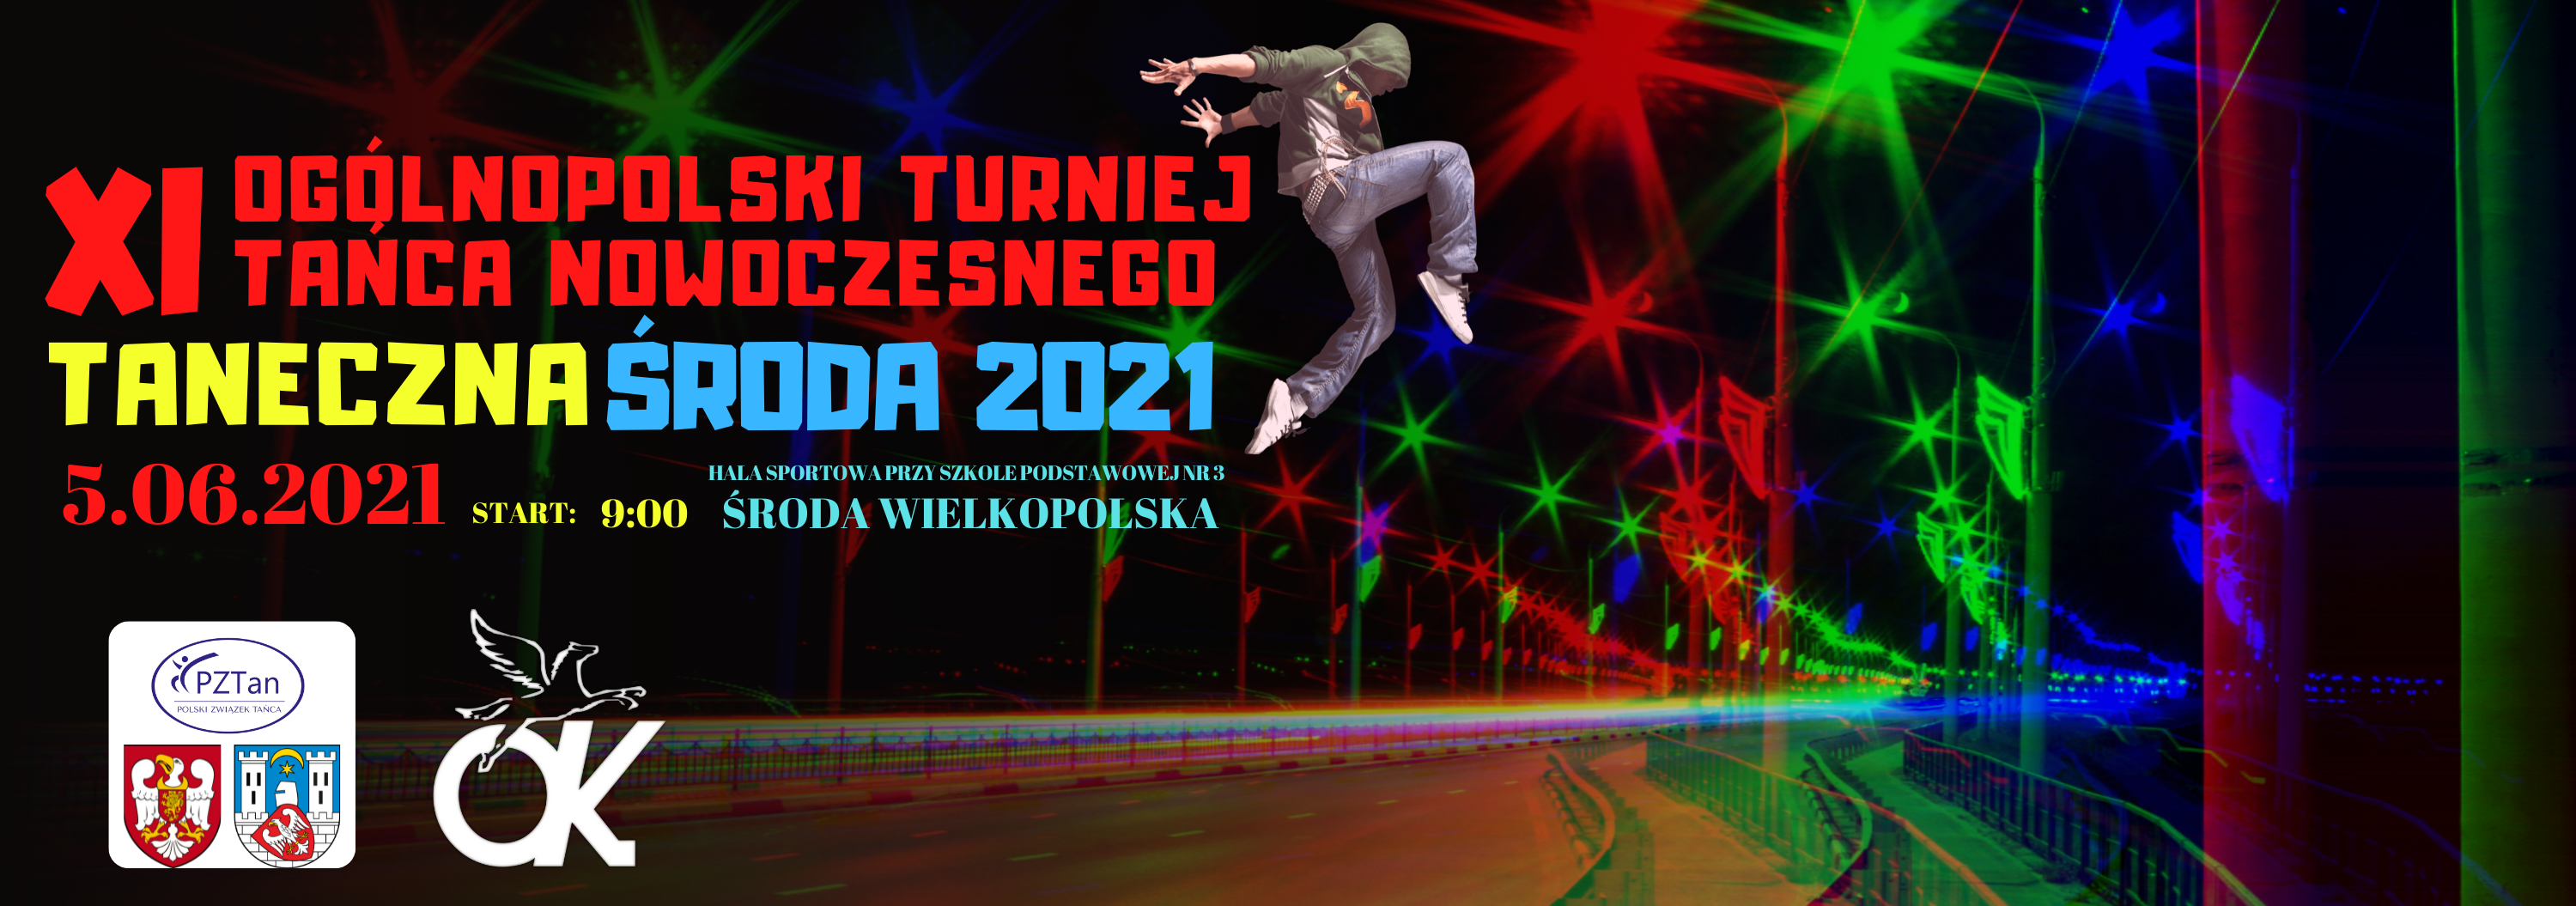 Baner reklamowy XI Ogólnopolskiego Turnieju Tańca Nowoczesnego TANECZNA ŚRODA 2021